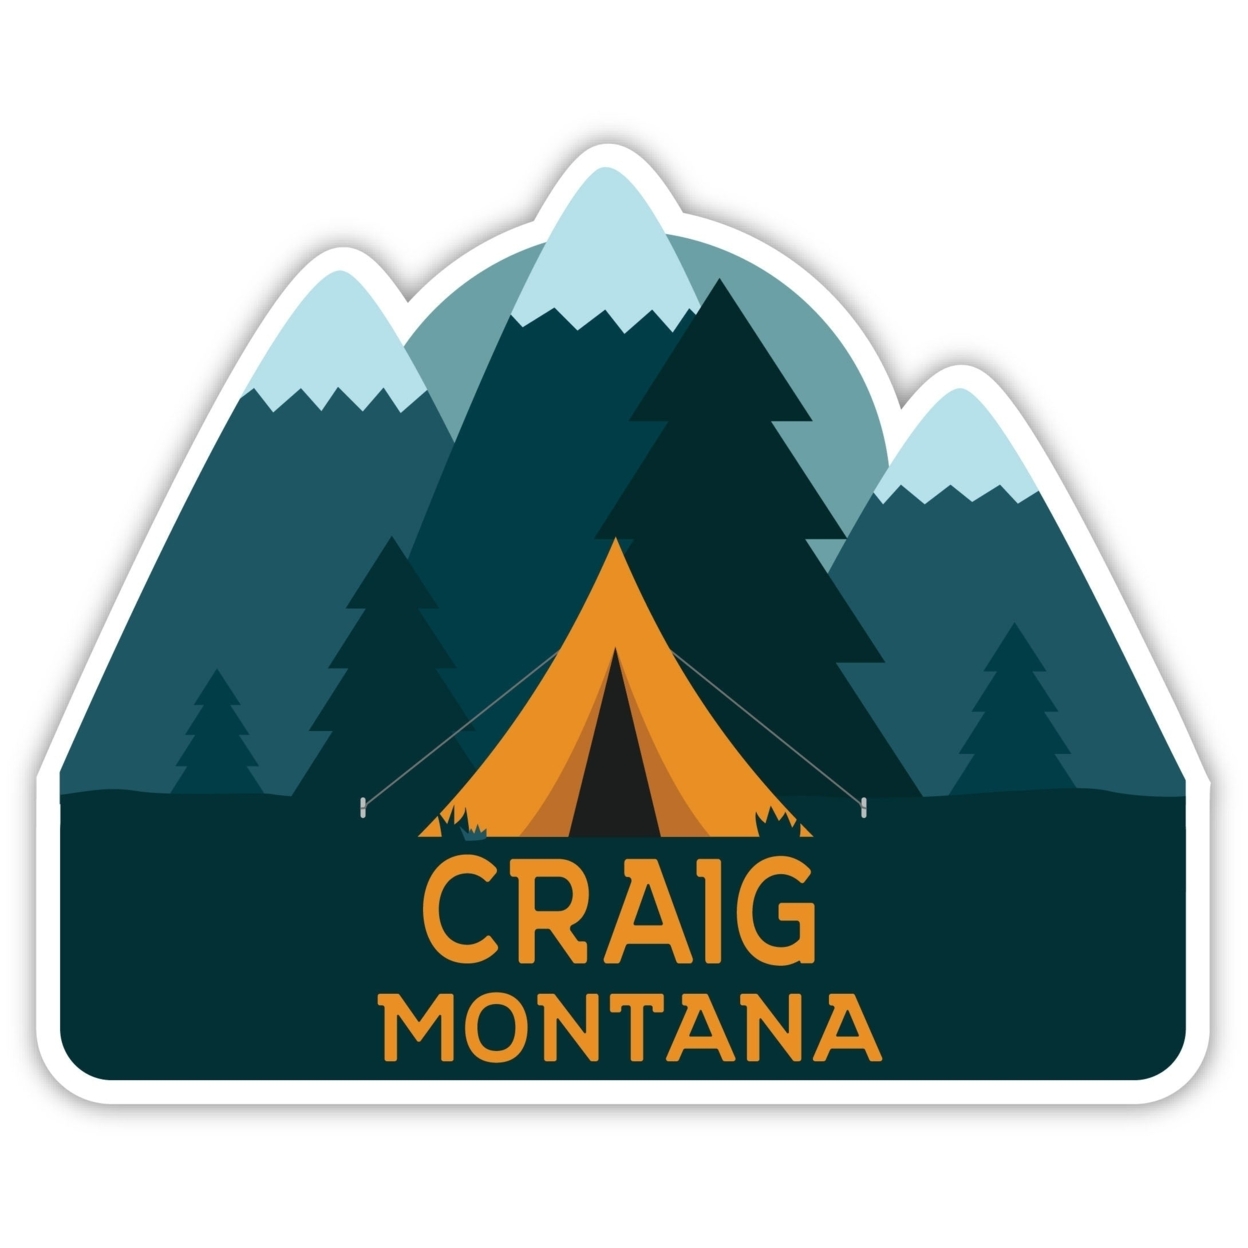 Craig Montana Souvenir Decorative Stickers (Choose Theme And Size) - Single Unit, 6-Inch, Tent